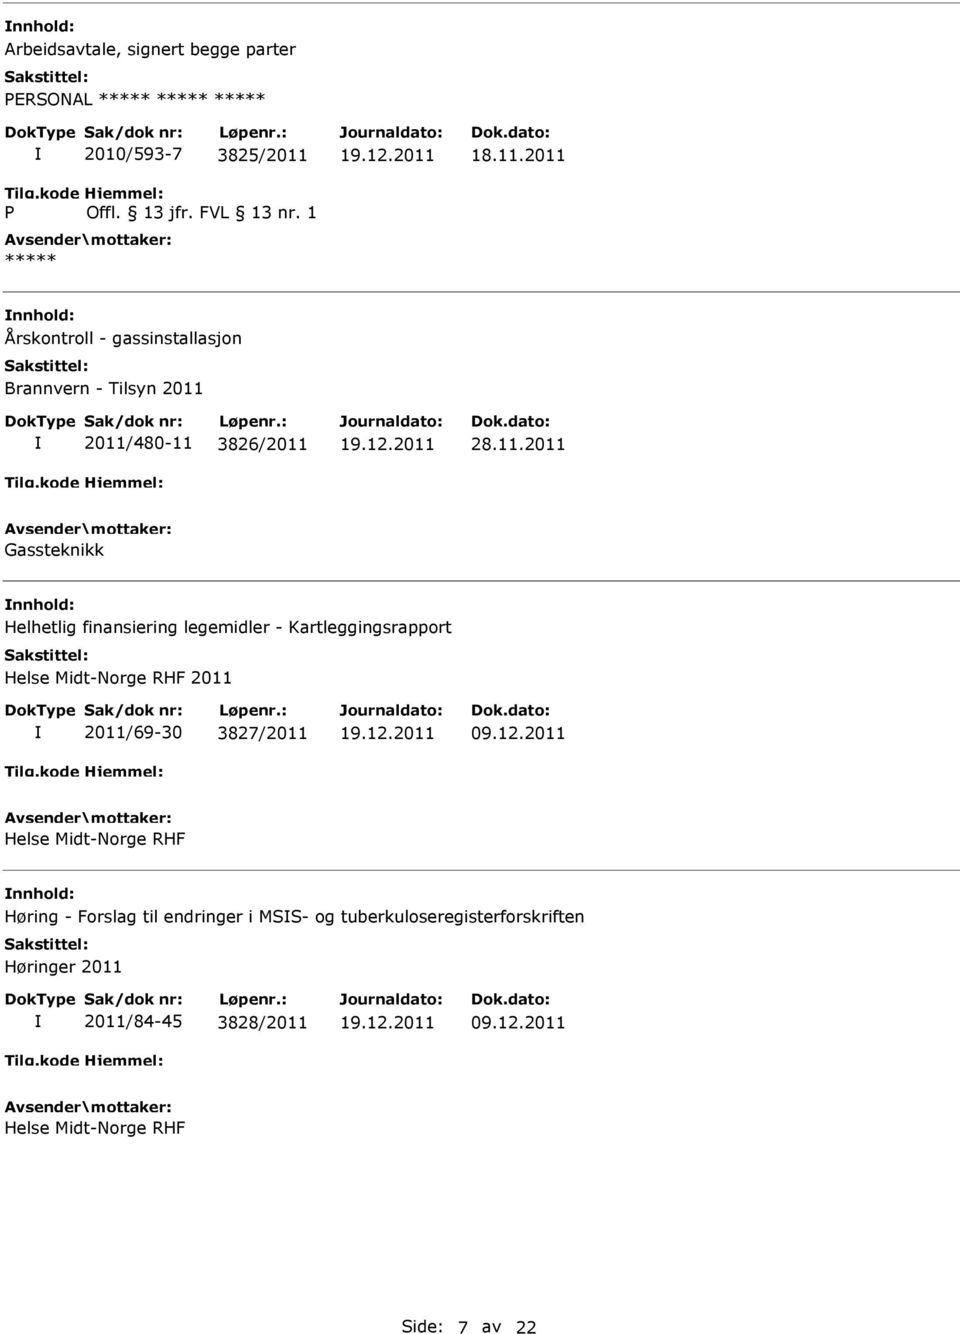 2011 Årskontroll - gassinstallasjon Brannvern - Tilsyn 2011 2011/480-11 3826/2011 28.11.2011 Gassteknikk Helhetlig